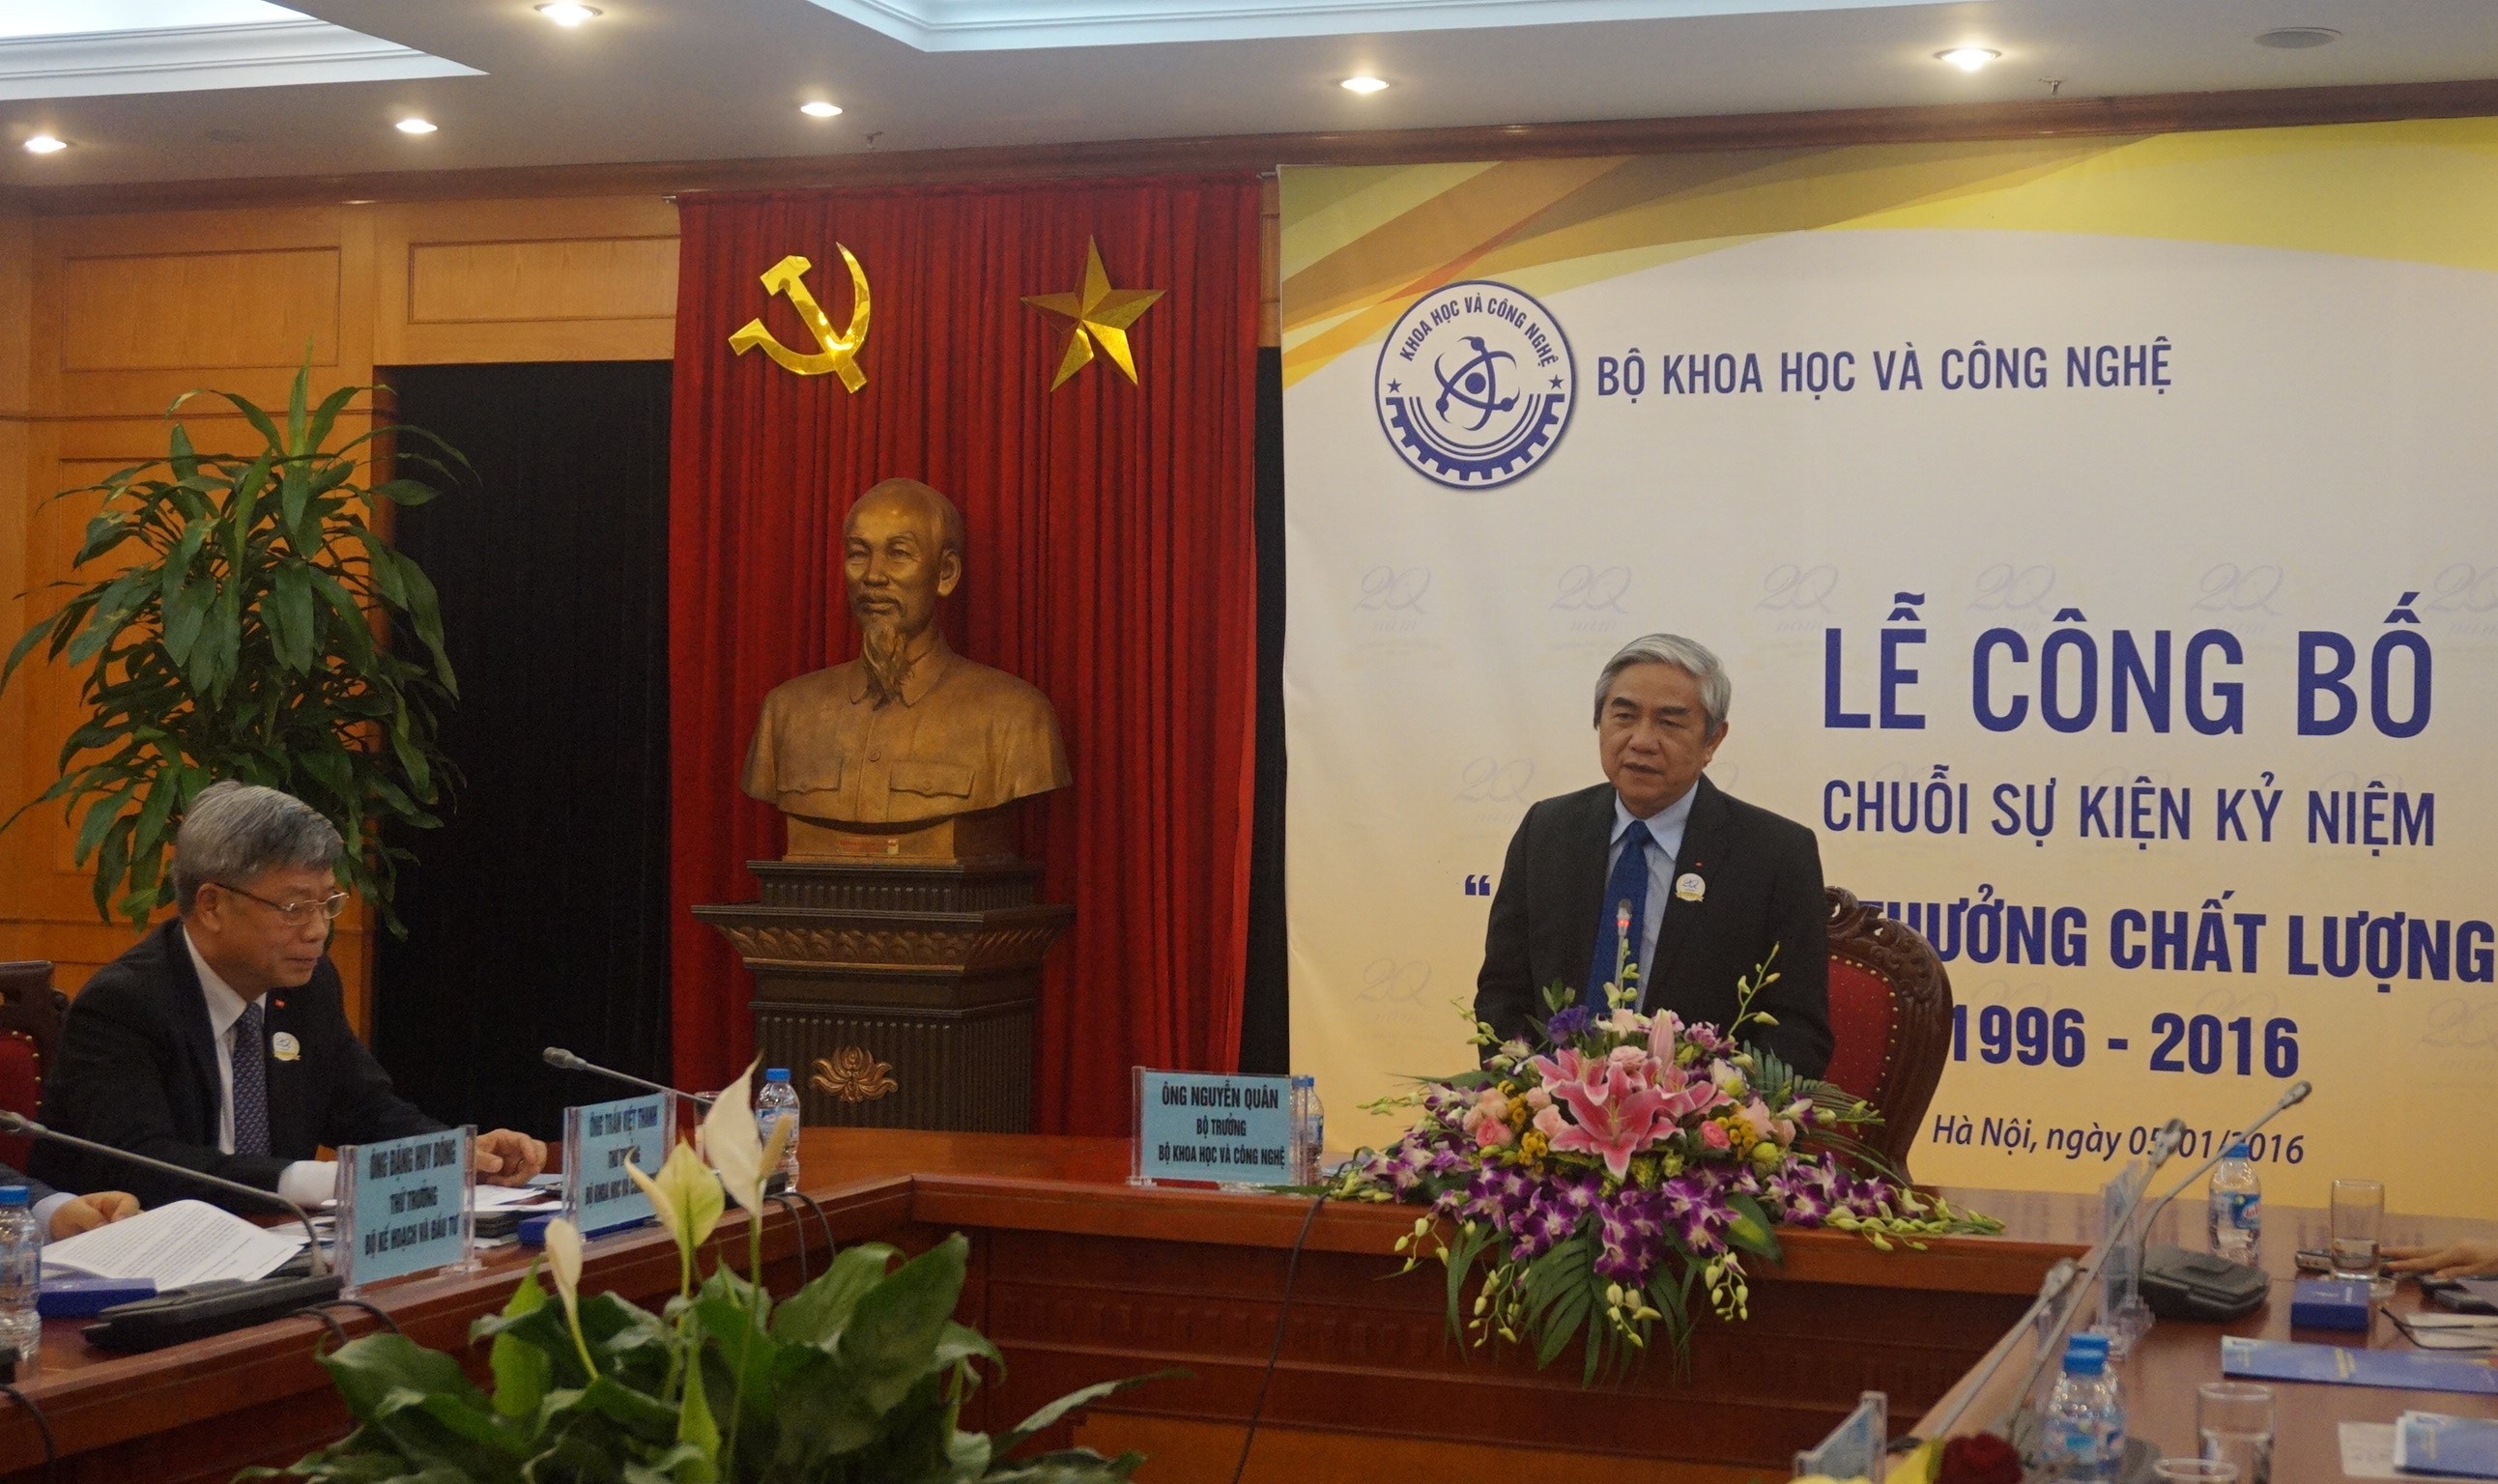 Bộ trưởng Bộ Khoa học và Công nghệ Nguyễn Quân phát biểu tại lễ công bố chuỗi sự kiện 